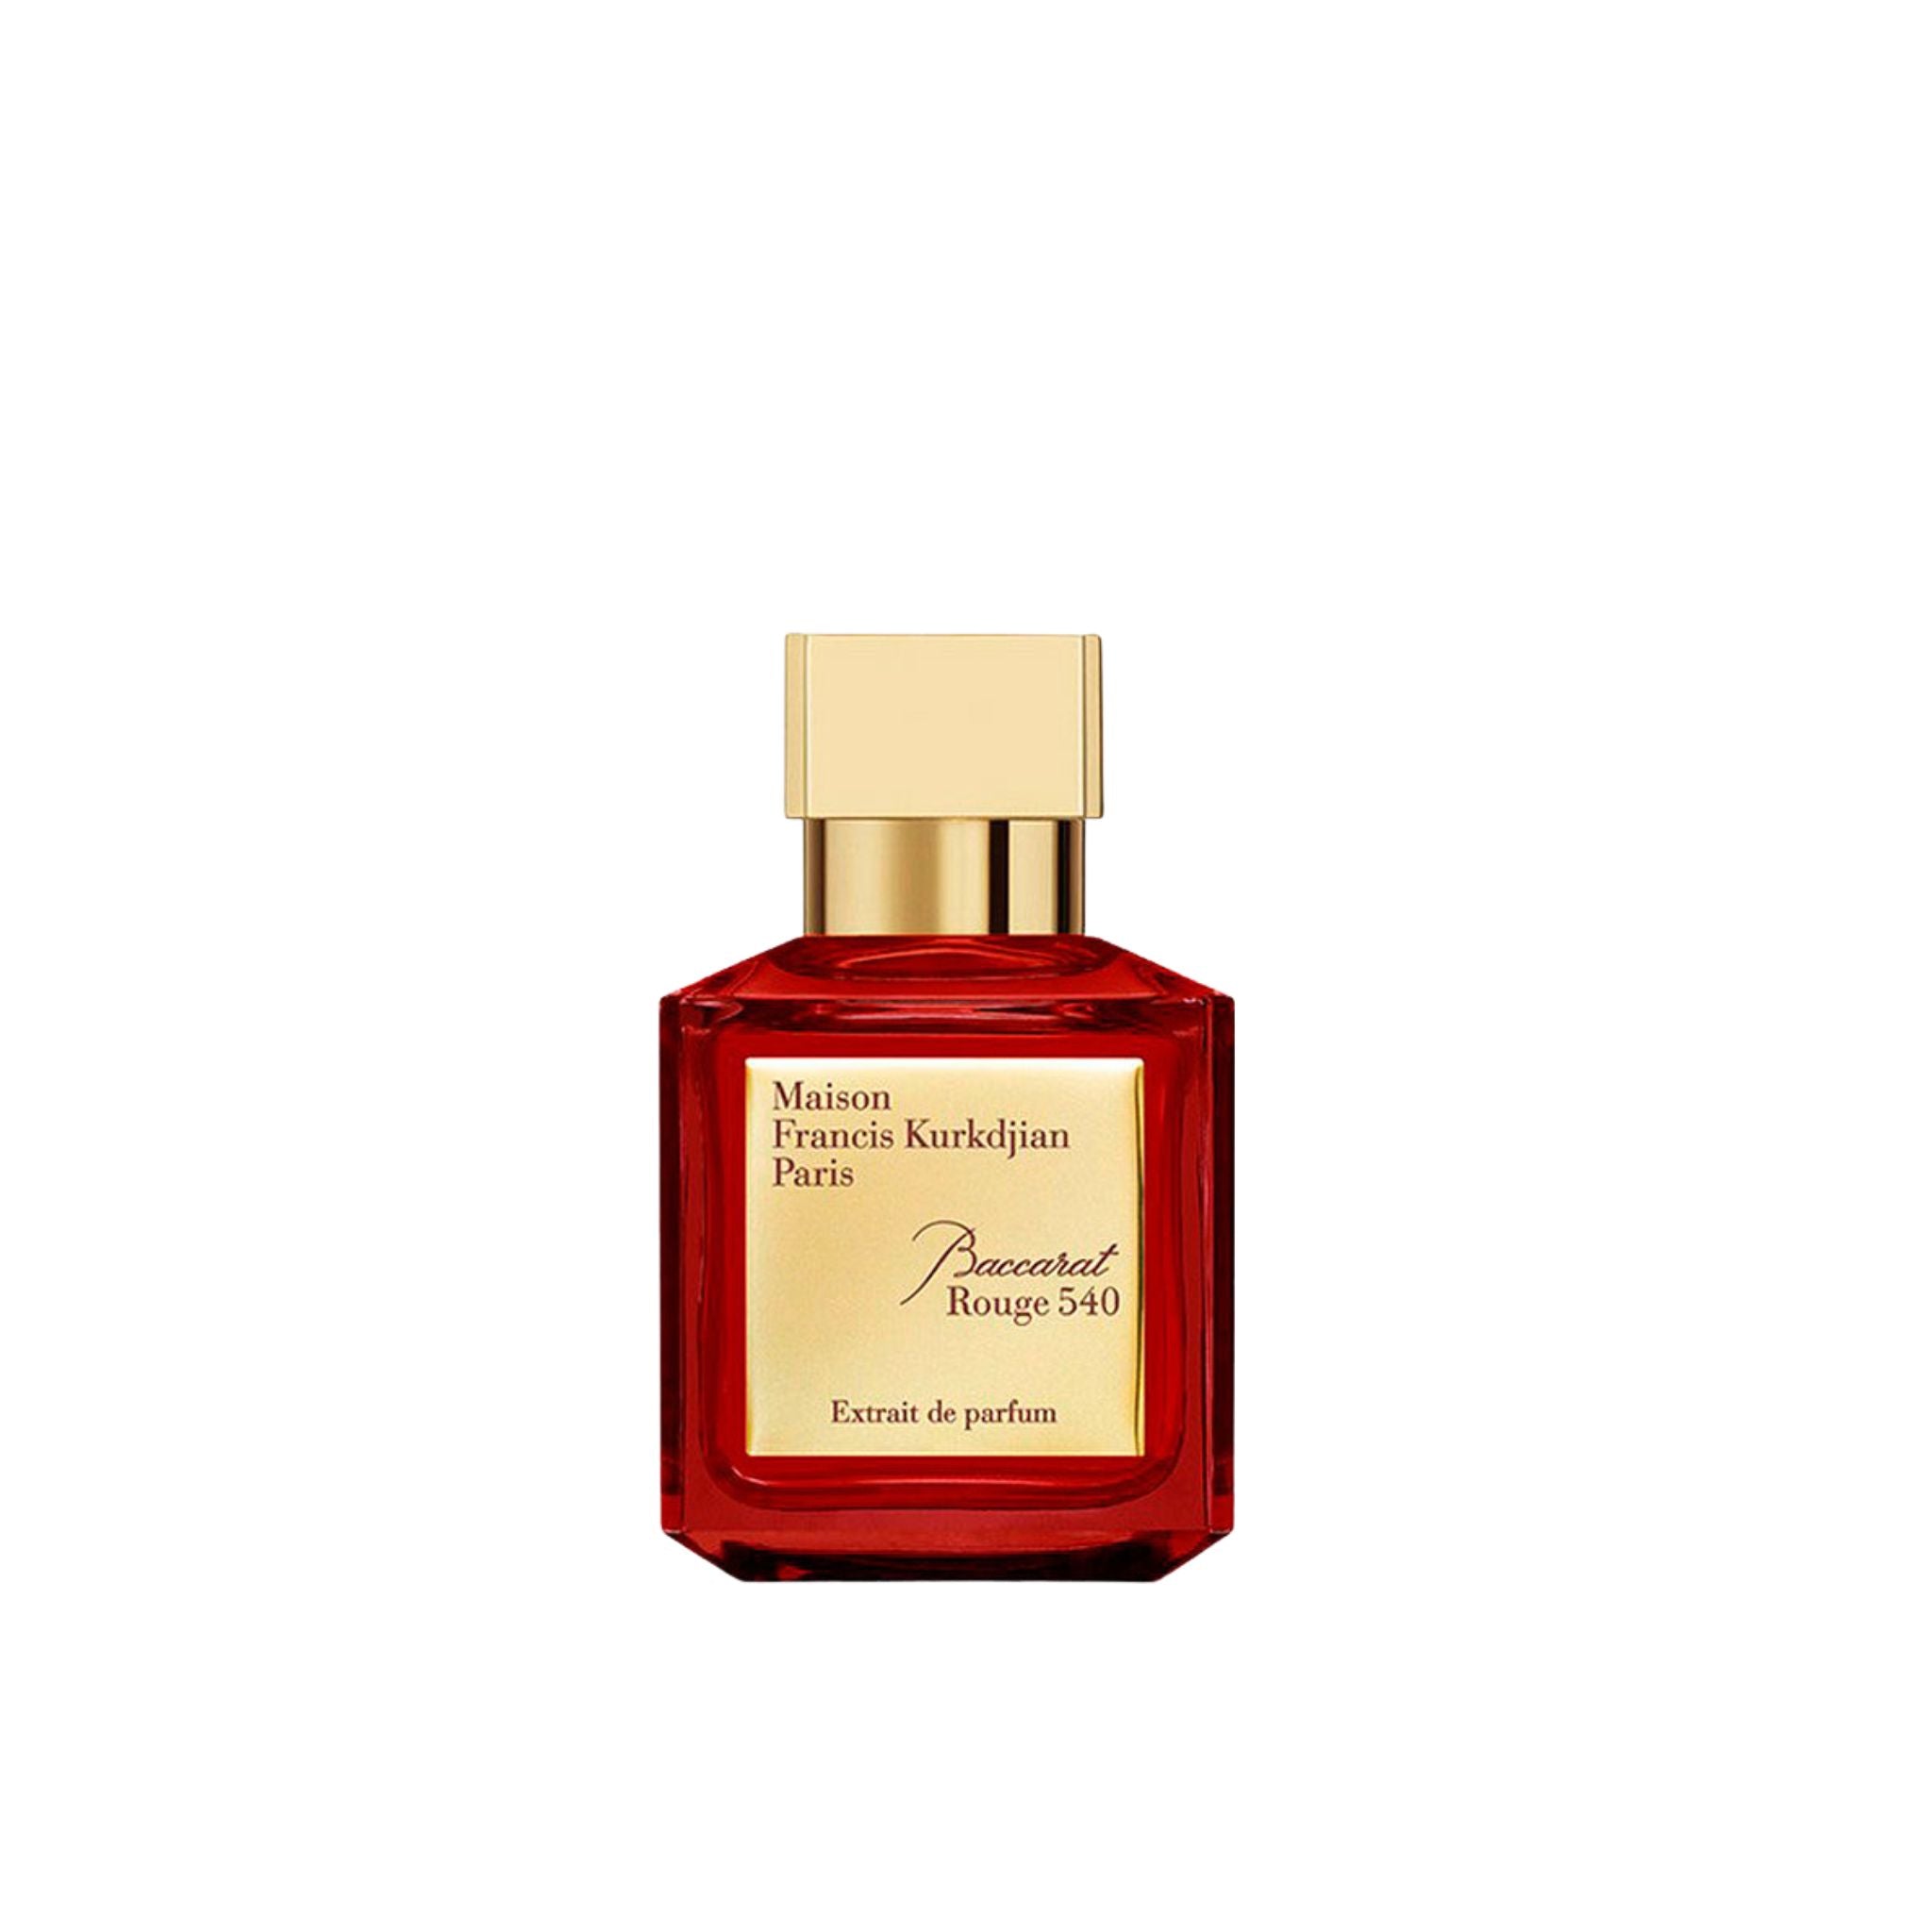  Maison Francis Kurkdjian Baccarat Rouge 540 Extrait de Parfum